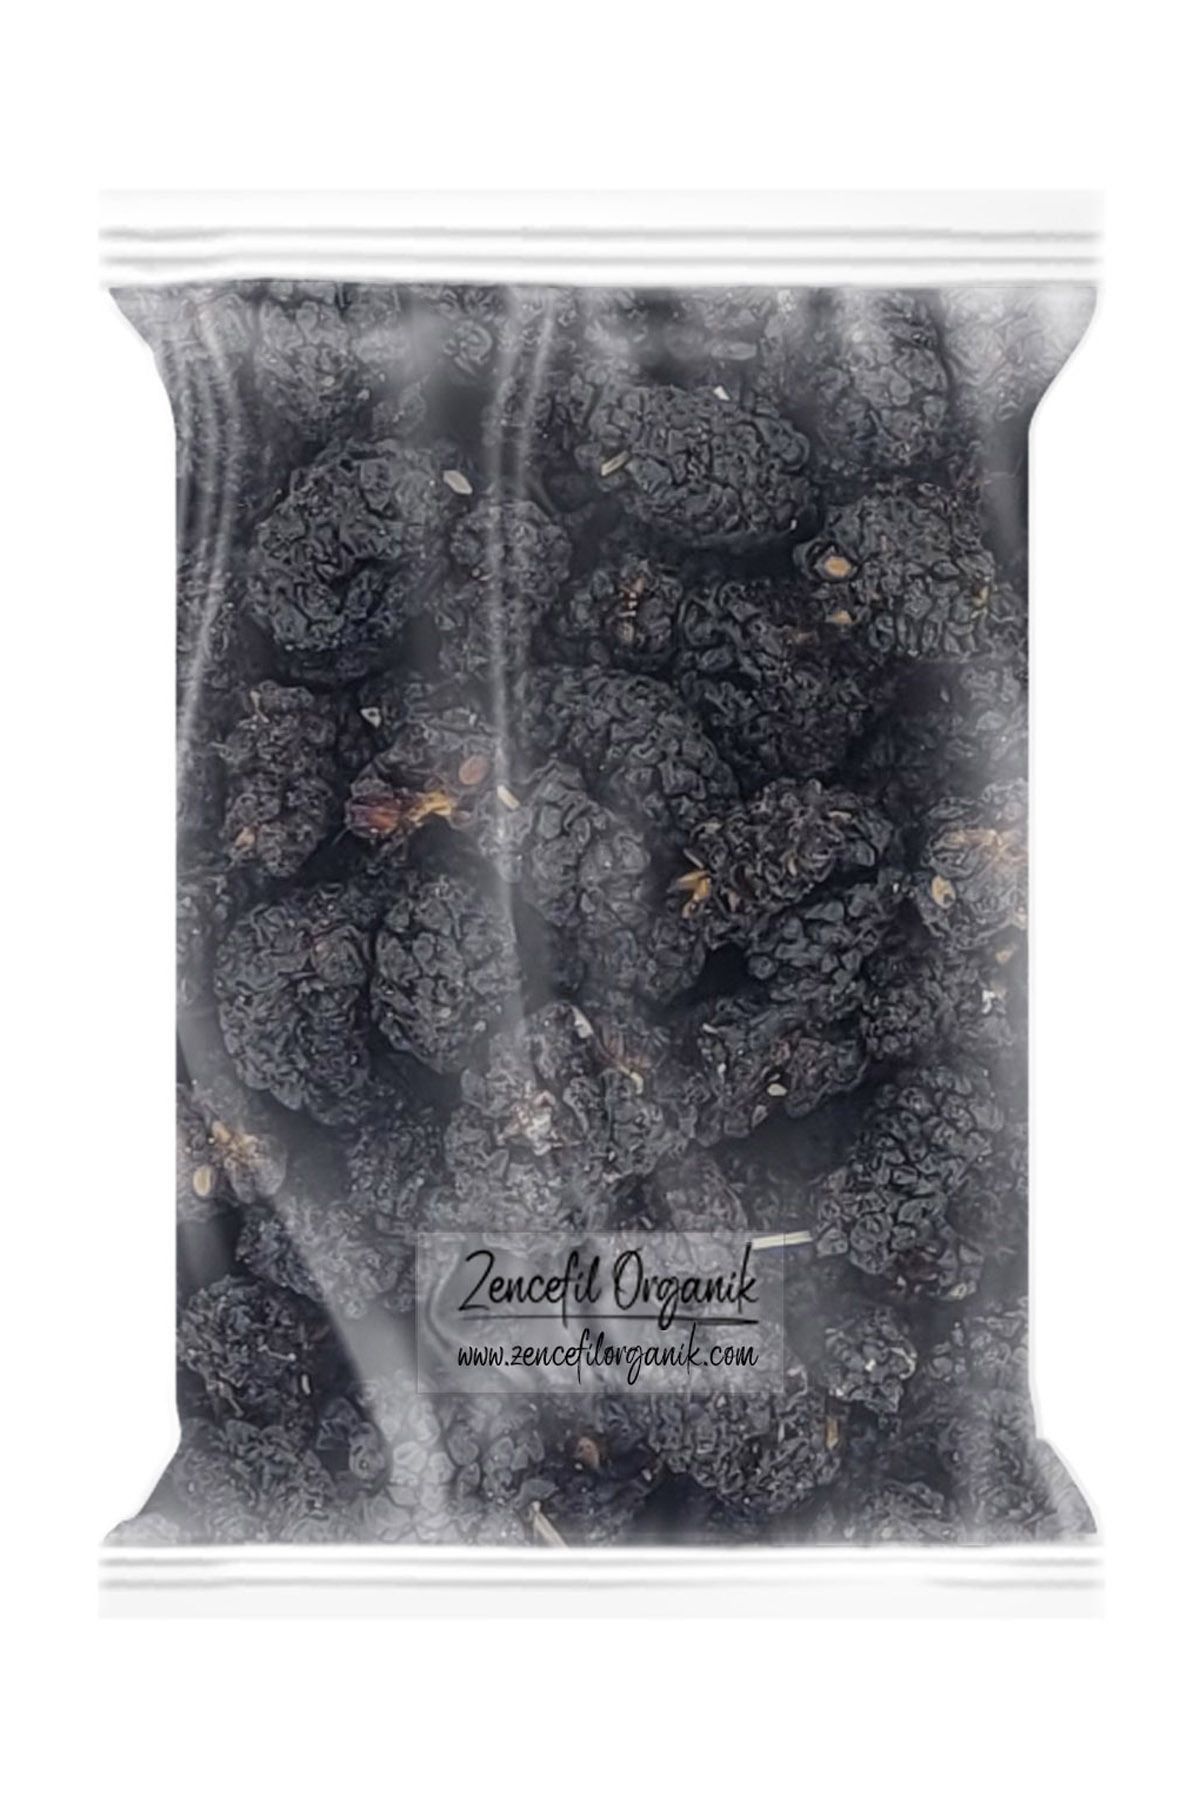 Zencefil Organik Siyah Kuru Dut 1 Kg. Karadut Kurusu Siyah Dut Kurusu Yeni Mahsül Kara Dut Dry Black Mulberry 1000 Gr